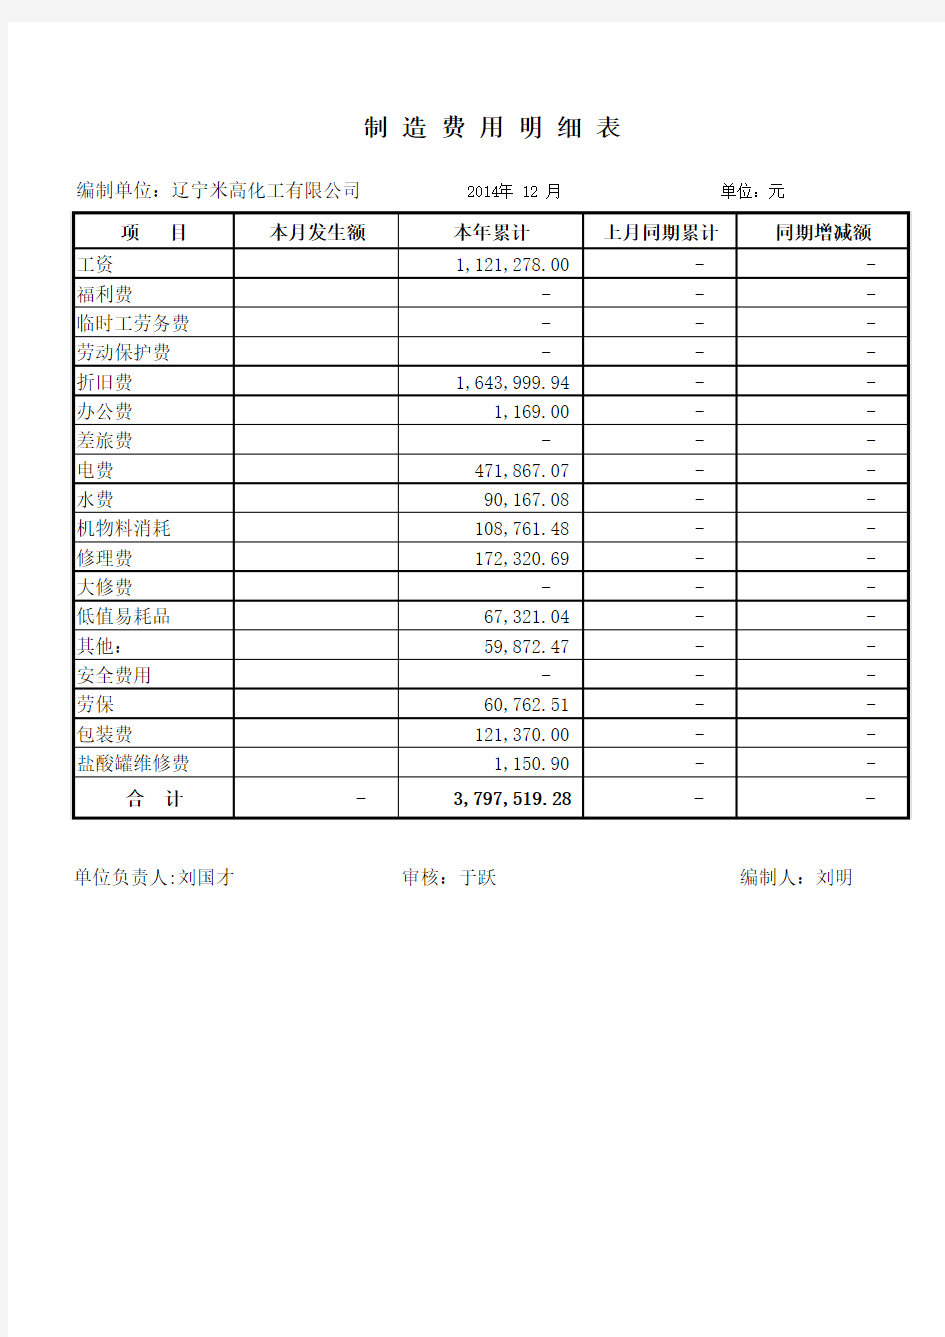 制造费用明细表2014